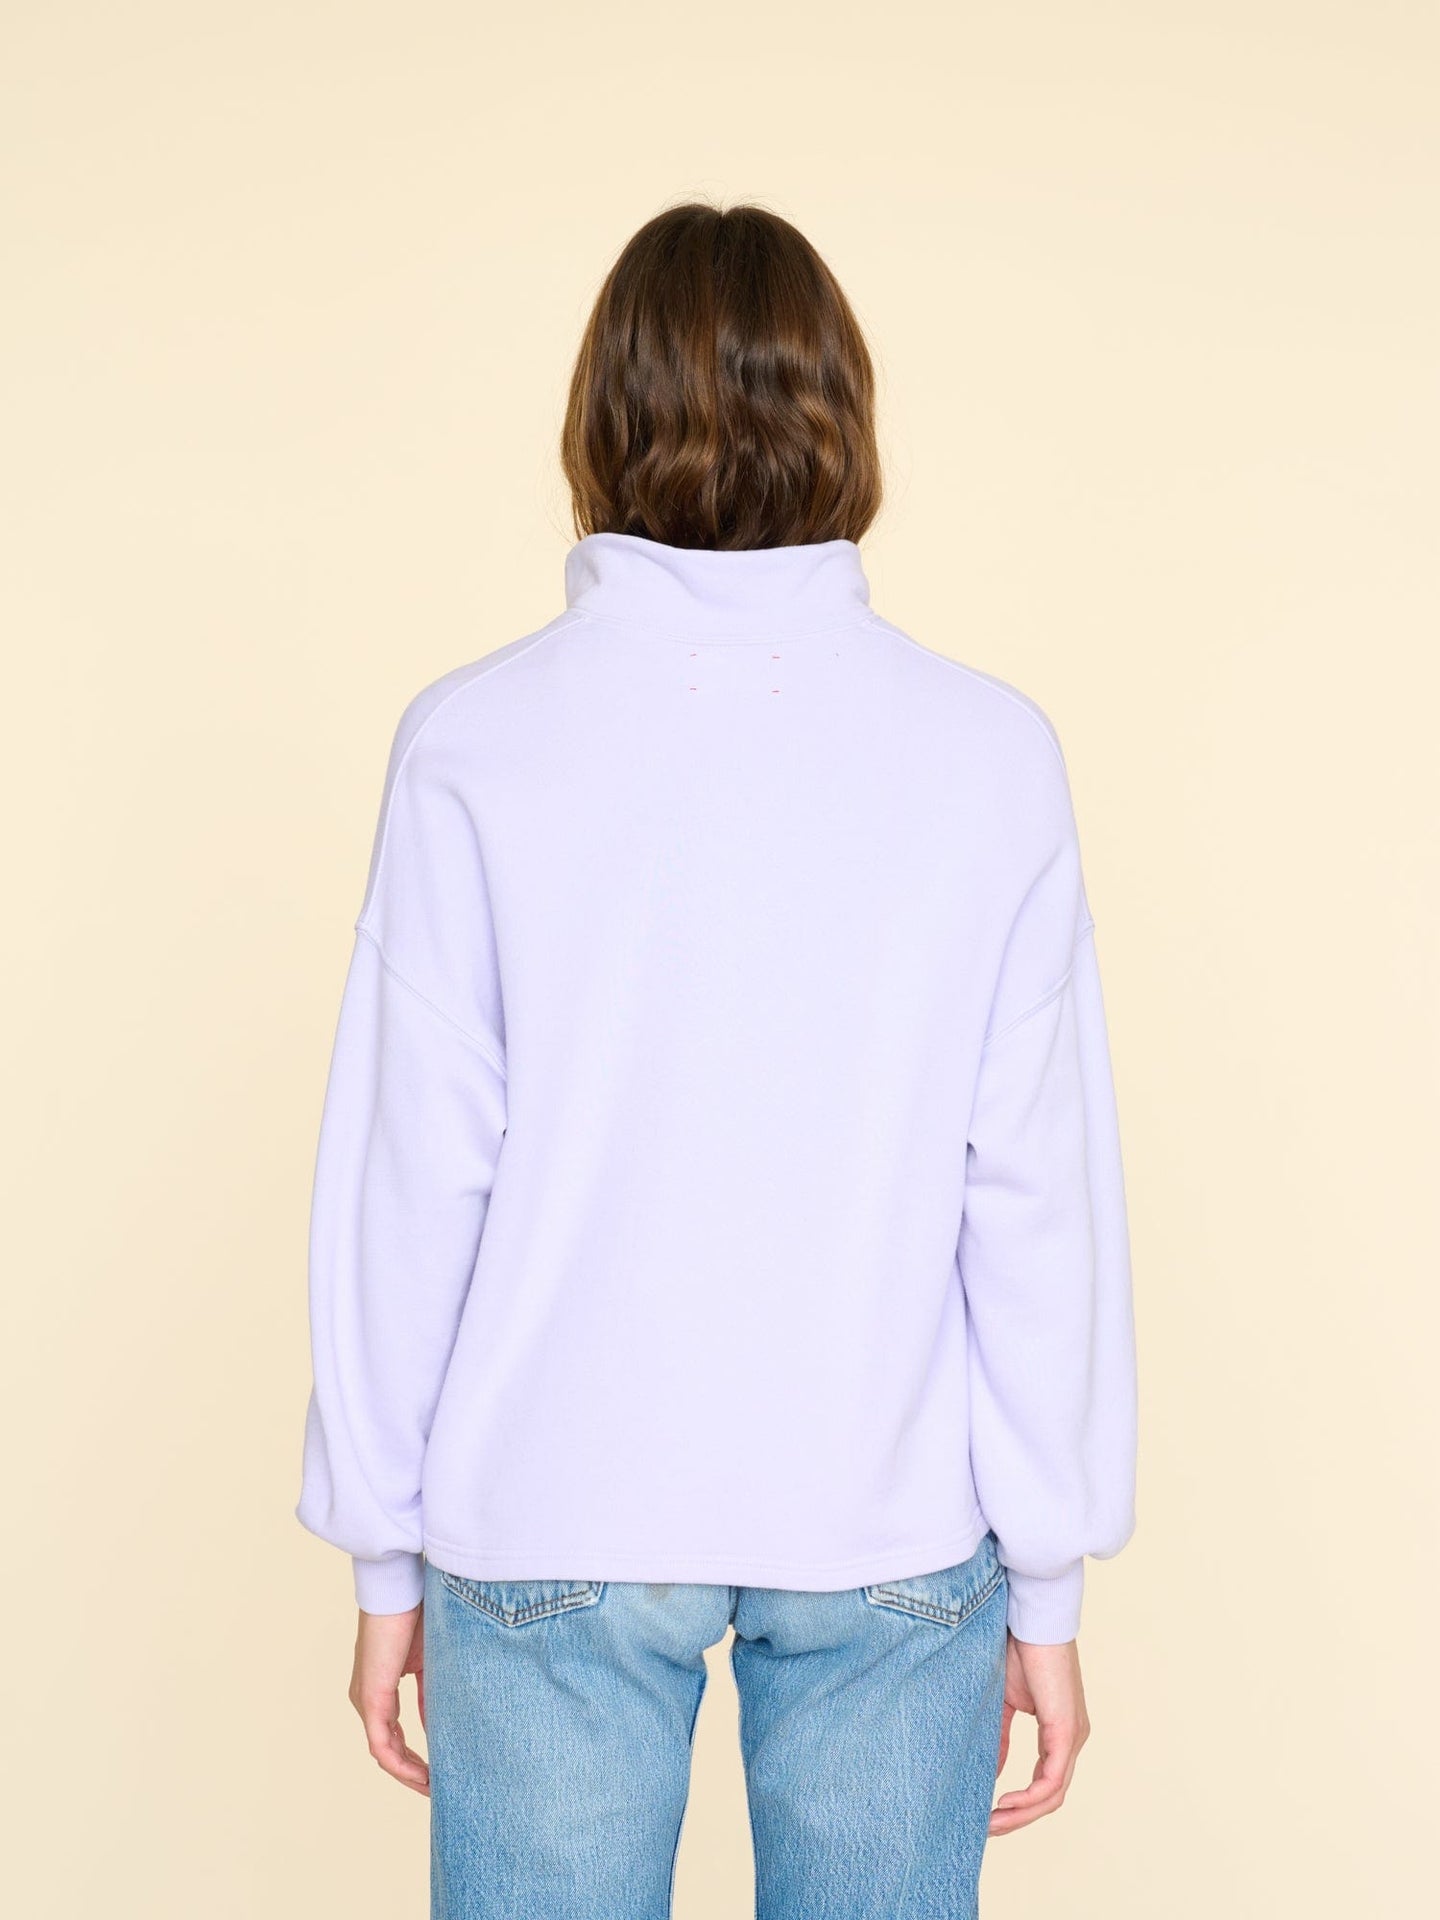 Xirena Sweatshirt Pale Iris Reid Sweatshirt